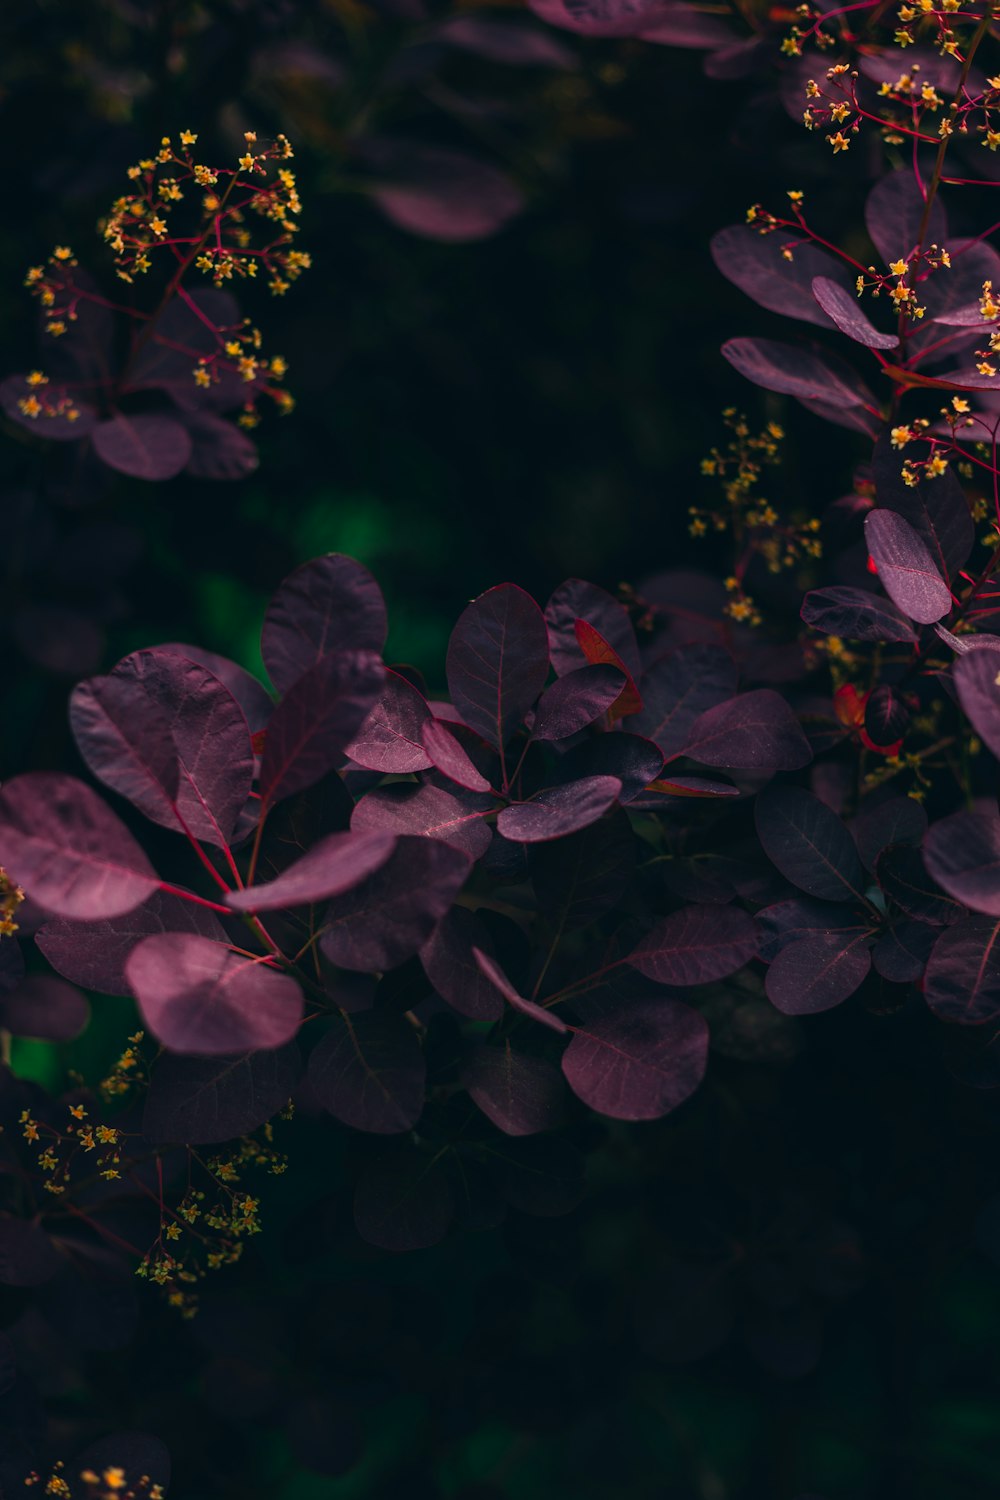 紫色の葉と黄色い花の束